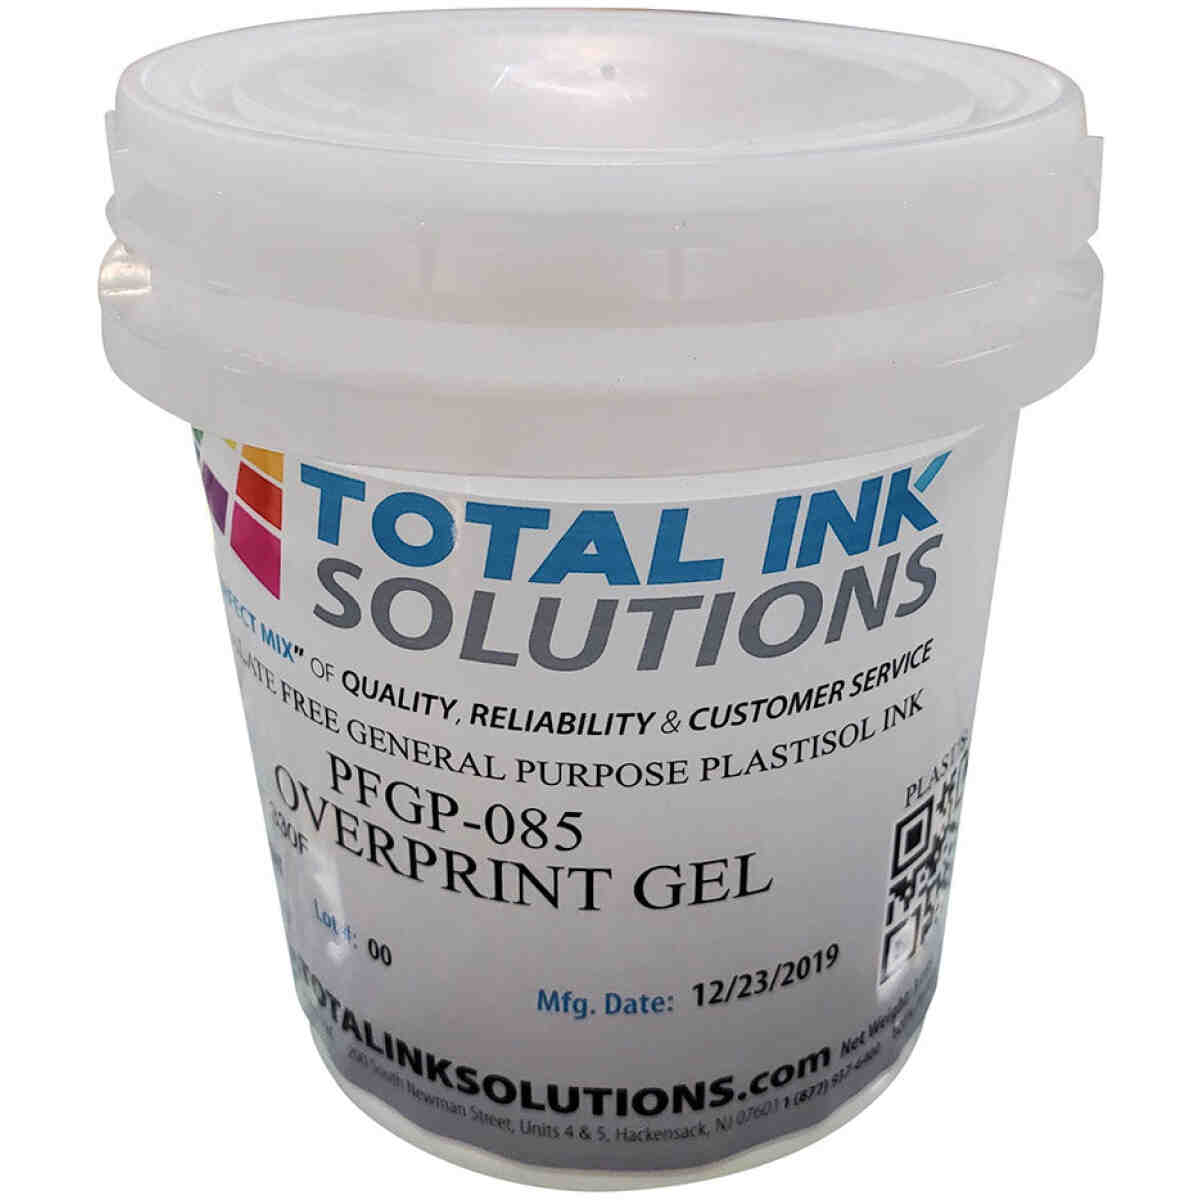 General Purpose Plastisol Ink - Overprint Gel TOTAL INK SOLUTIONS®